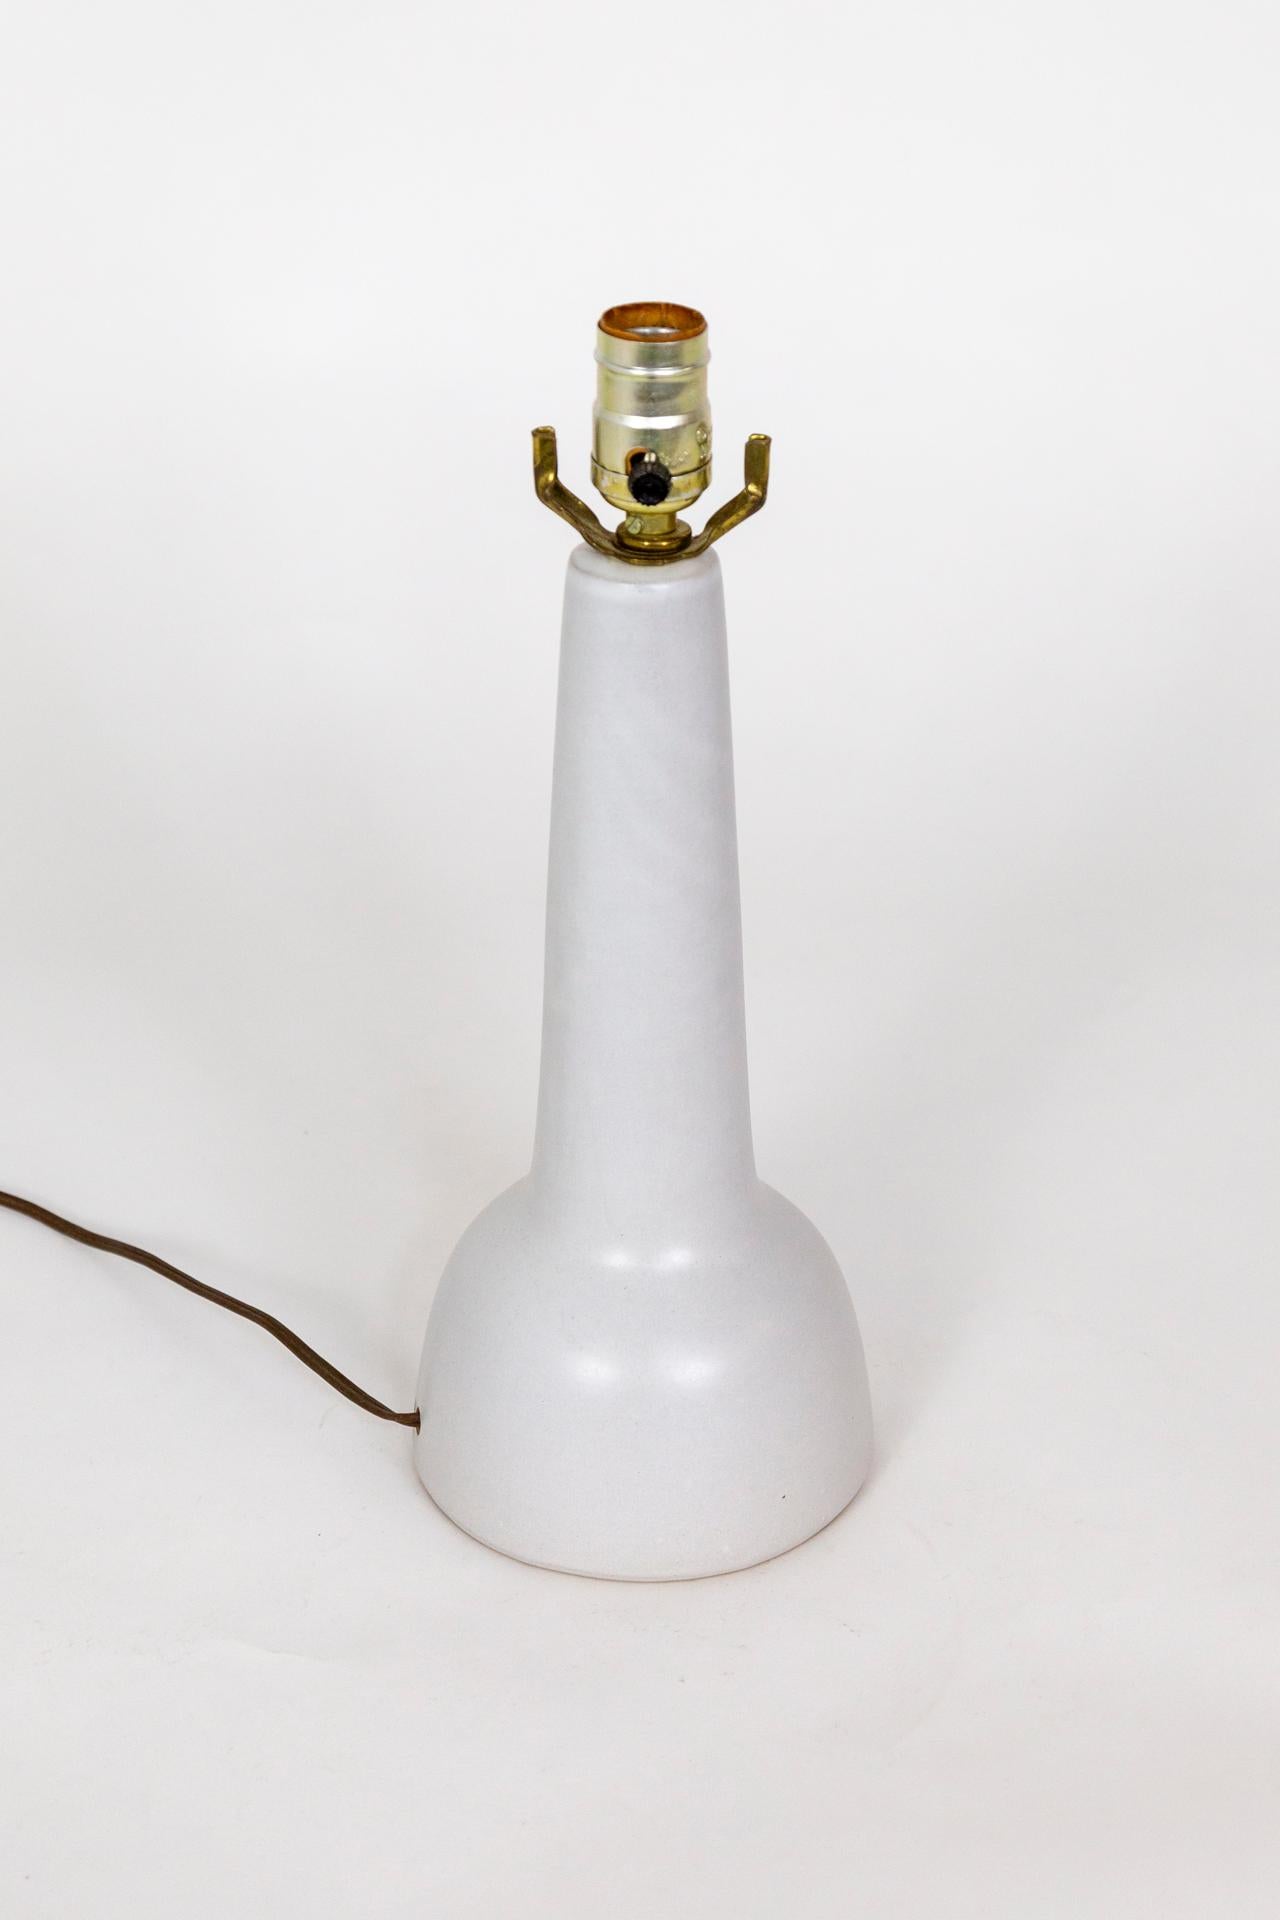 Lampe en céramique épurée, blanc ivoire, fabriquée par Marshall Studios et conçue par Jane et Gordon Martz, vers les années 1960. Signé au dos ; autocollant 